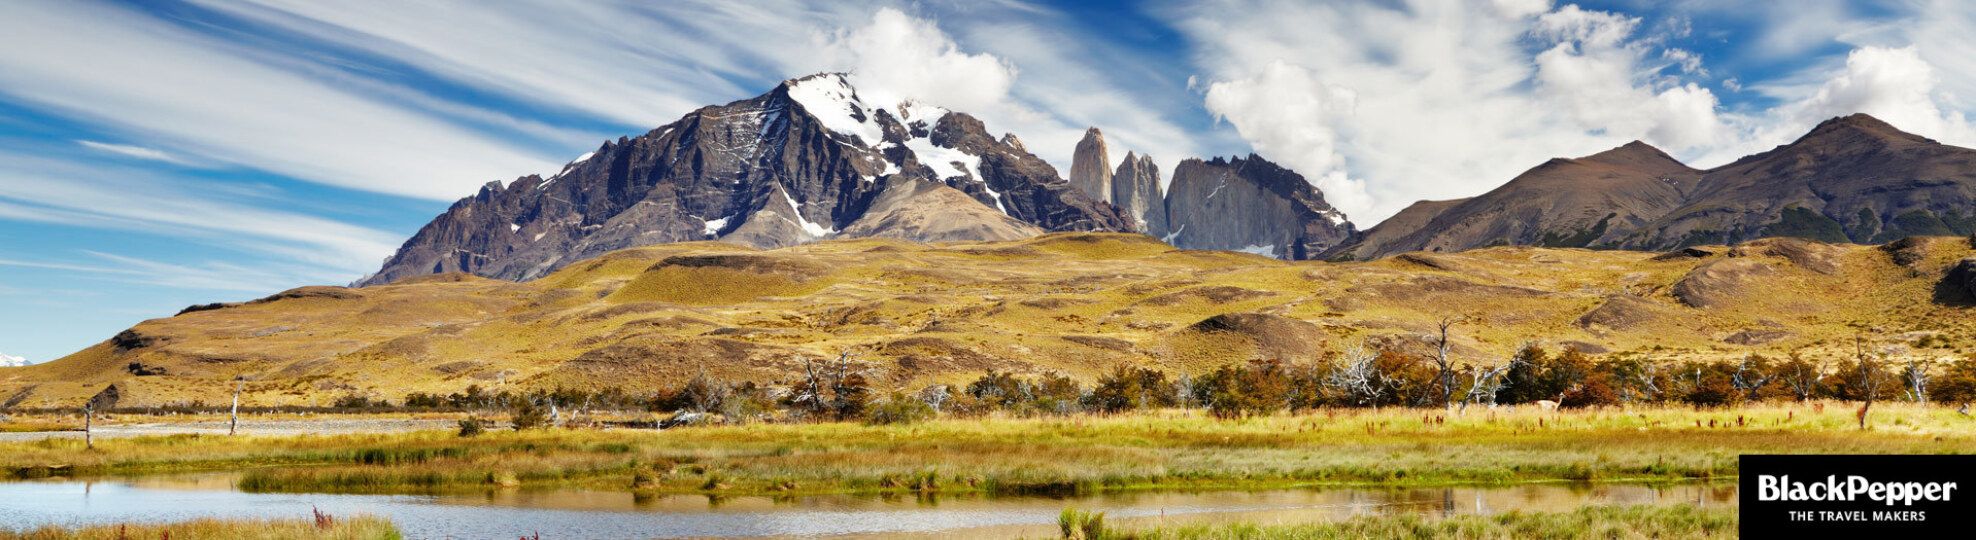 Viajes Patagonia. Slide